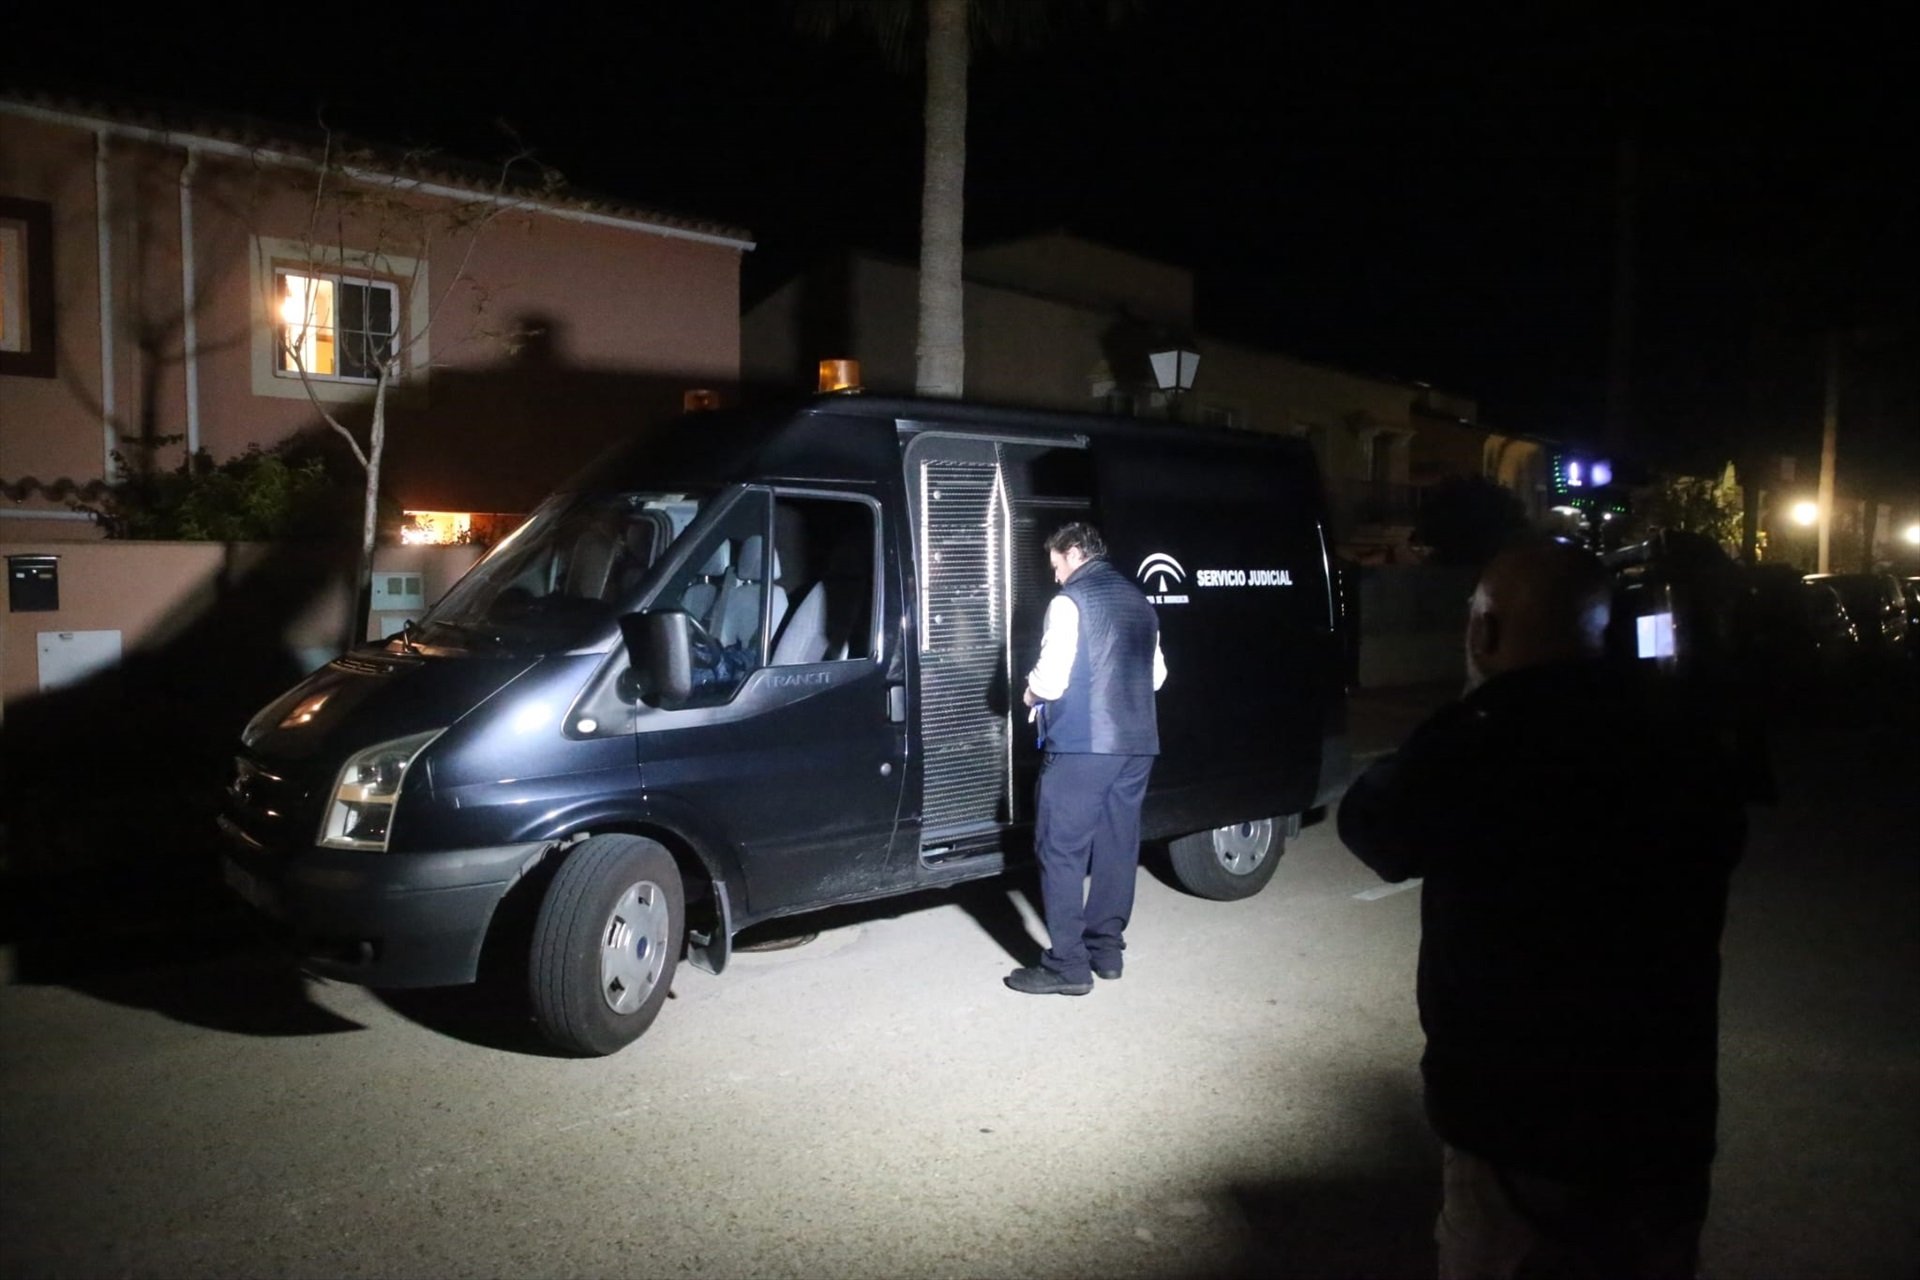 Domicilio donde han encontrado muertos a tiros a un hombre y una mujer en La Línea (Cádiz) / Nono Rico, Europa Press